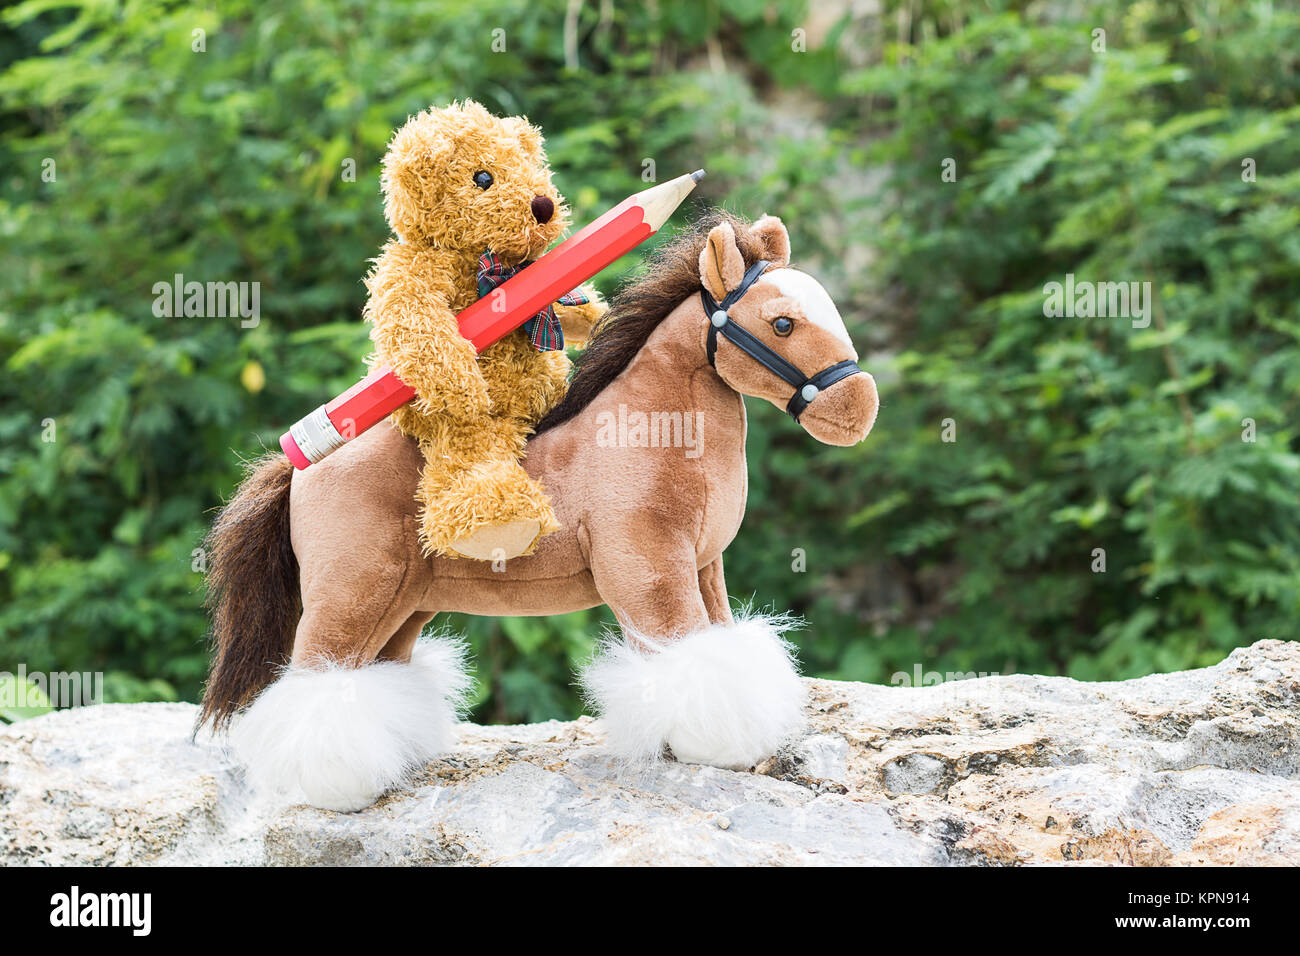 Ours monter à cheval en forêt Banque D'Images